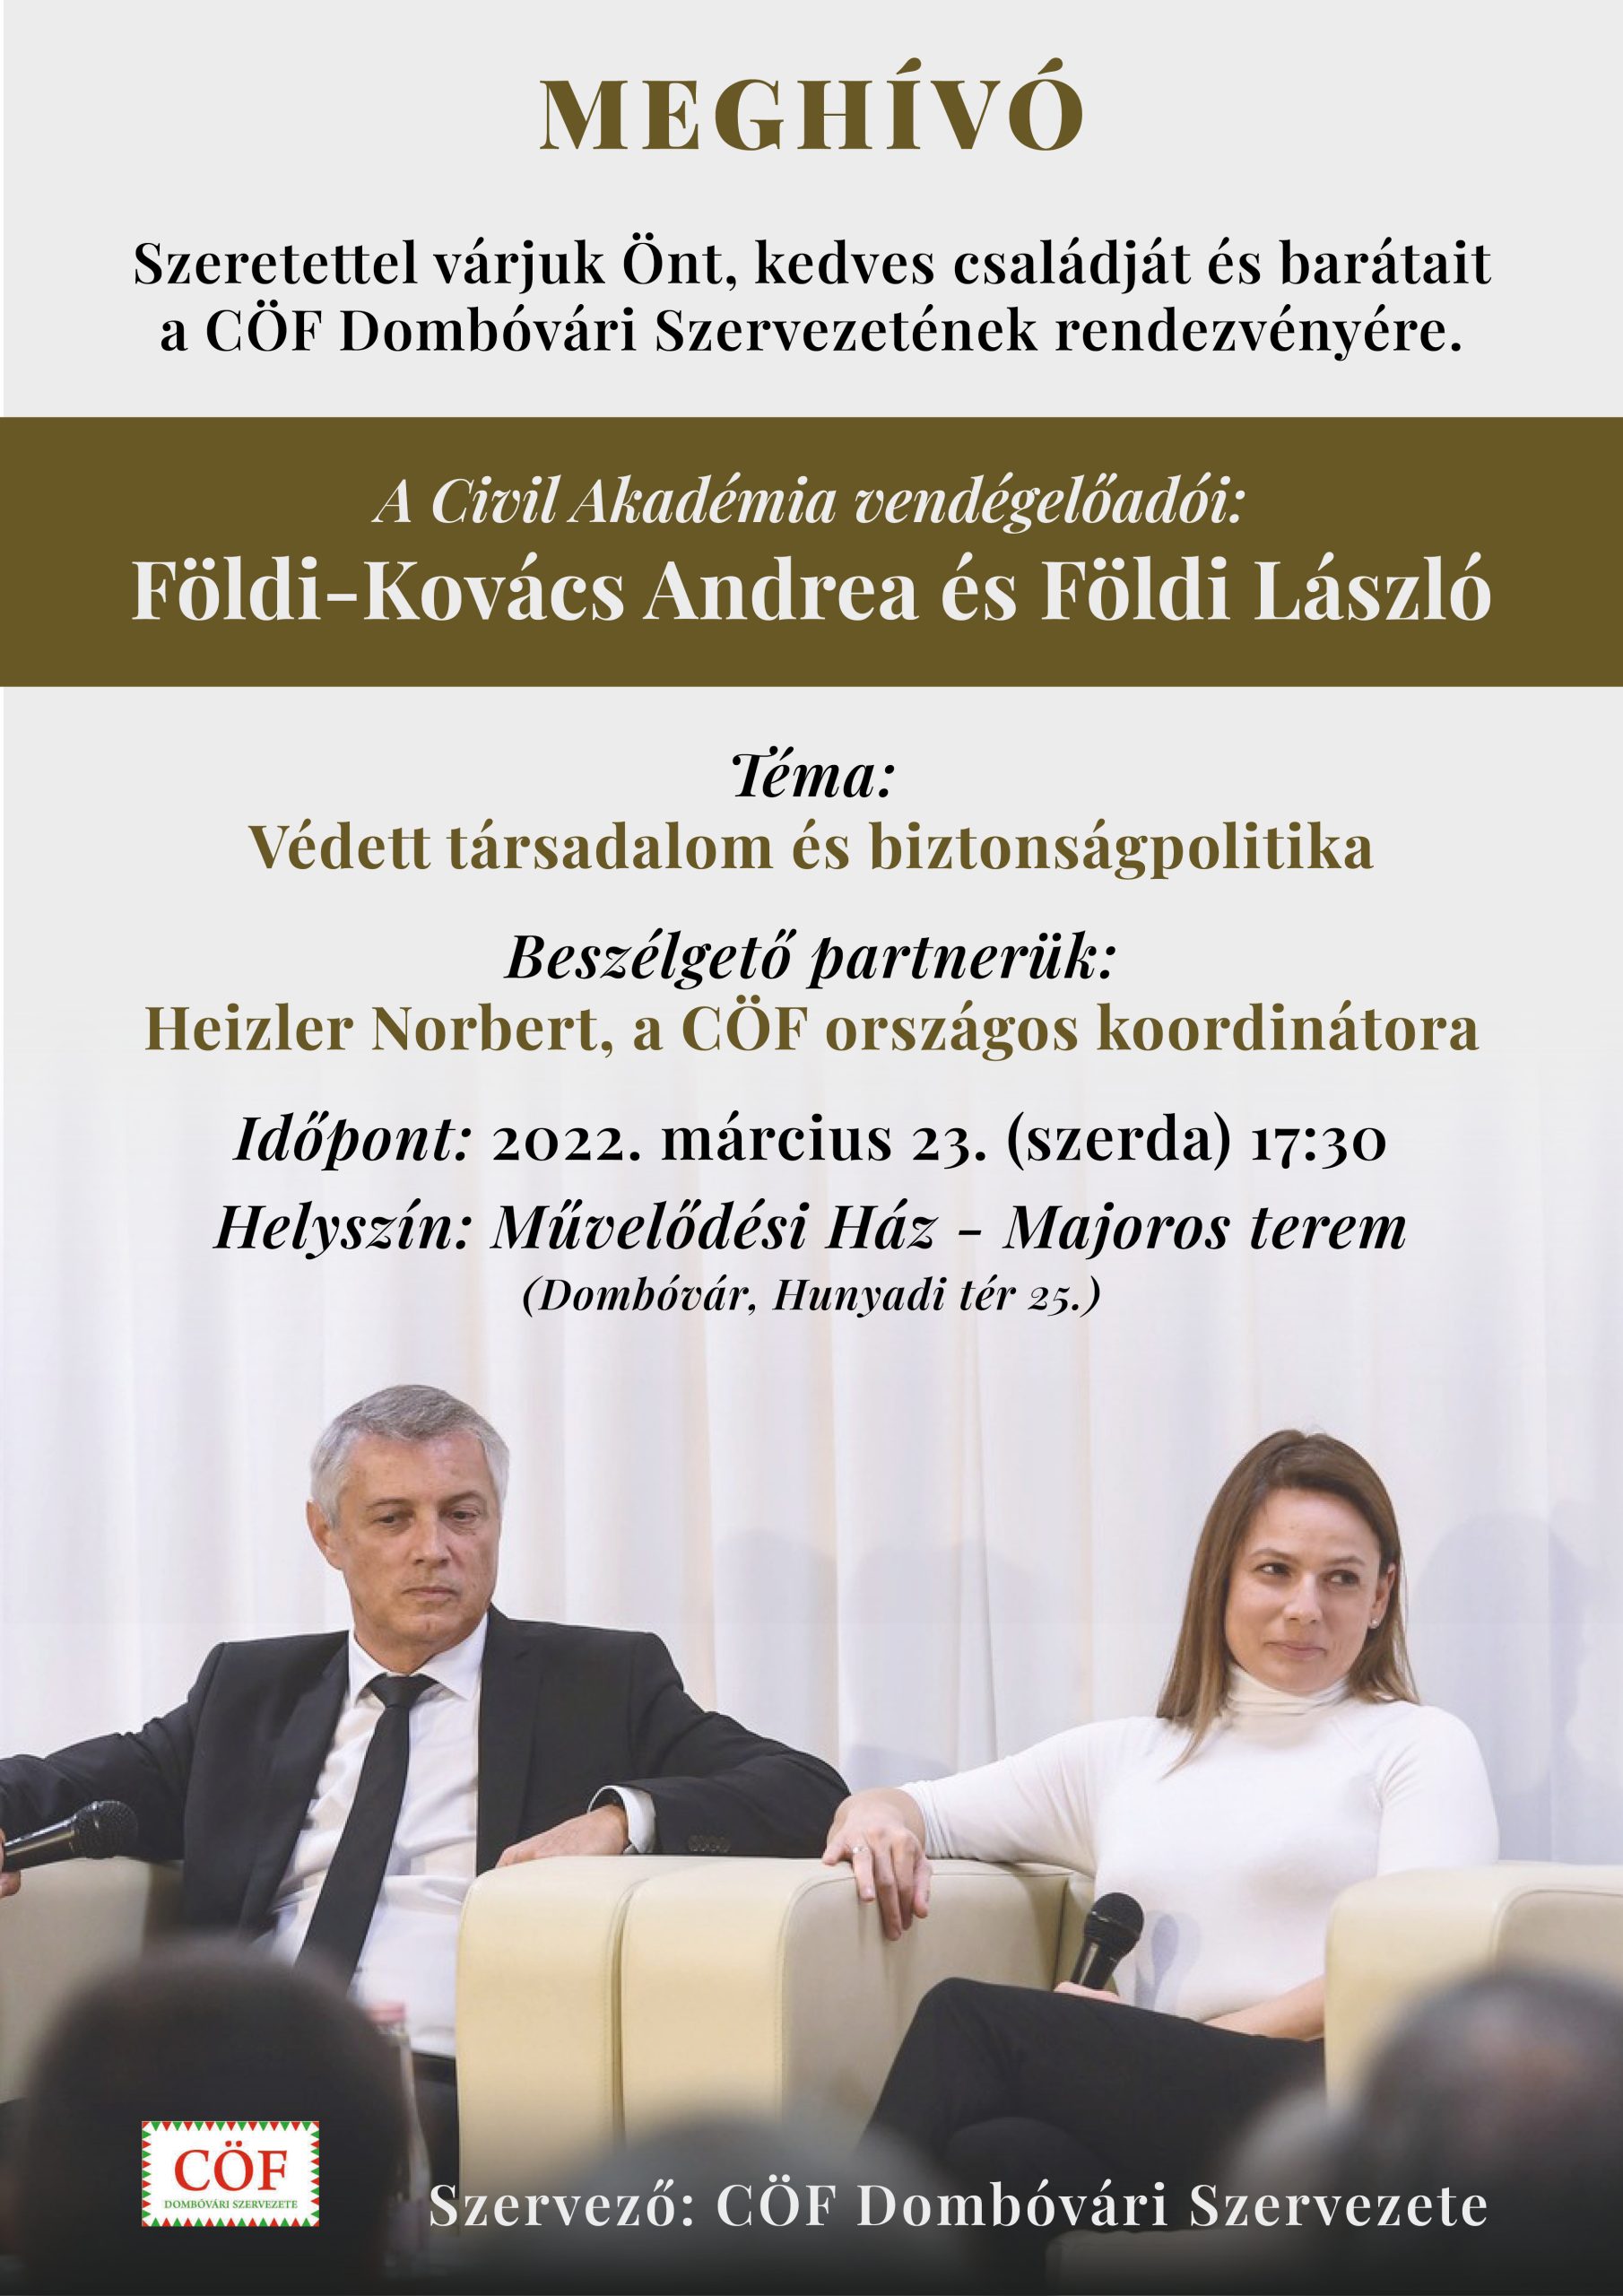 CÖF Dombóvári Szervezetének rendezvénye